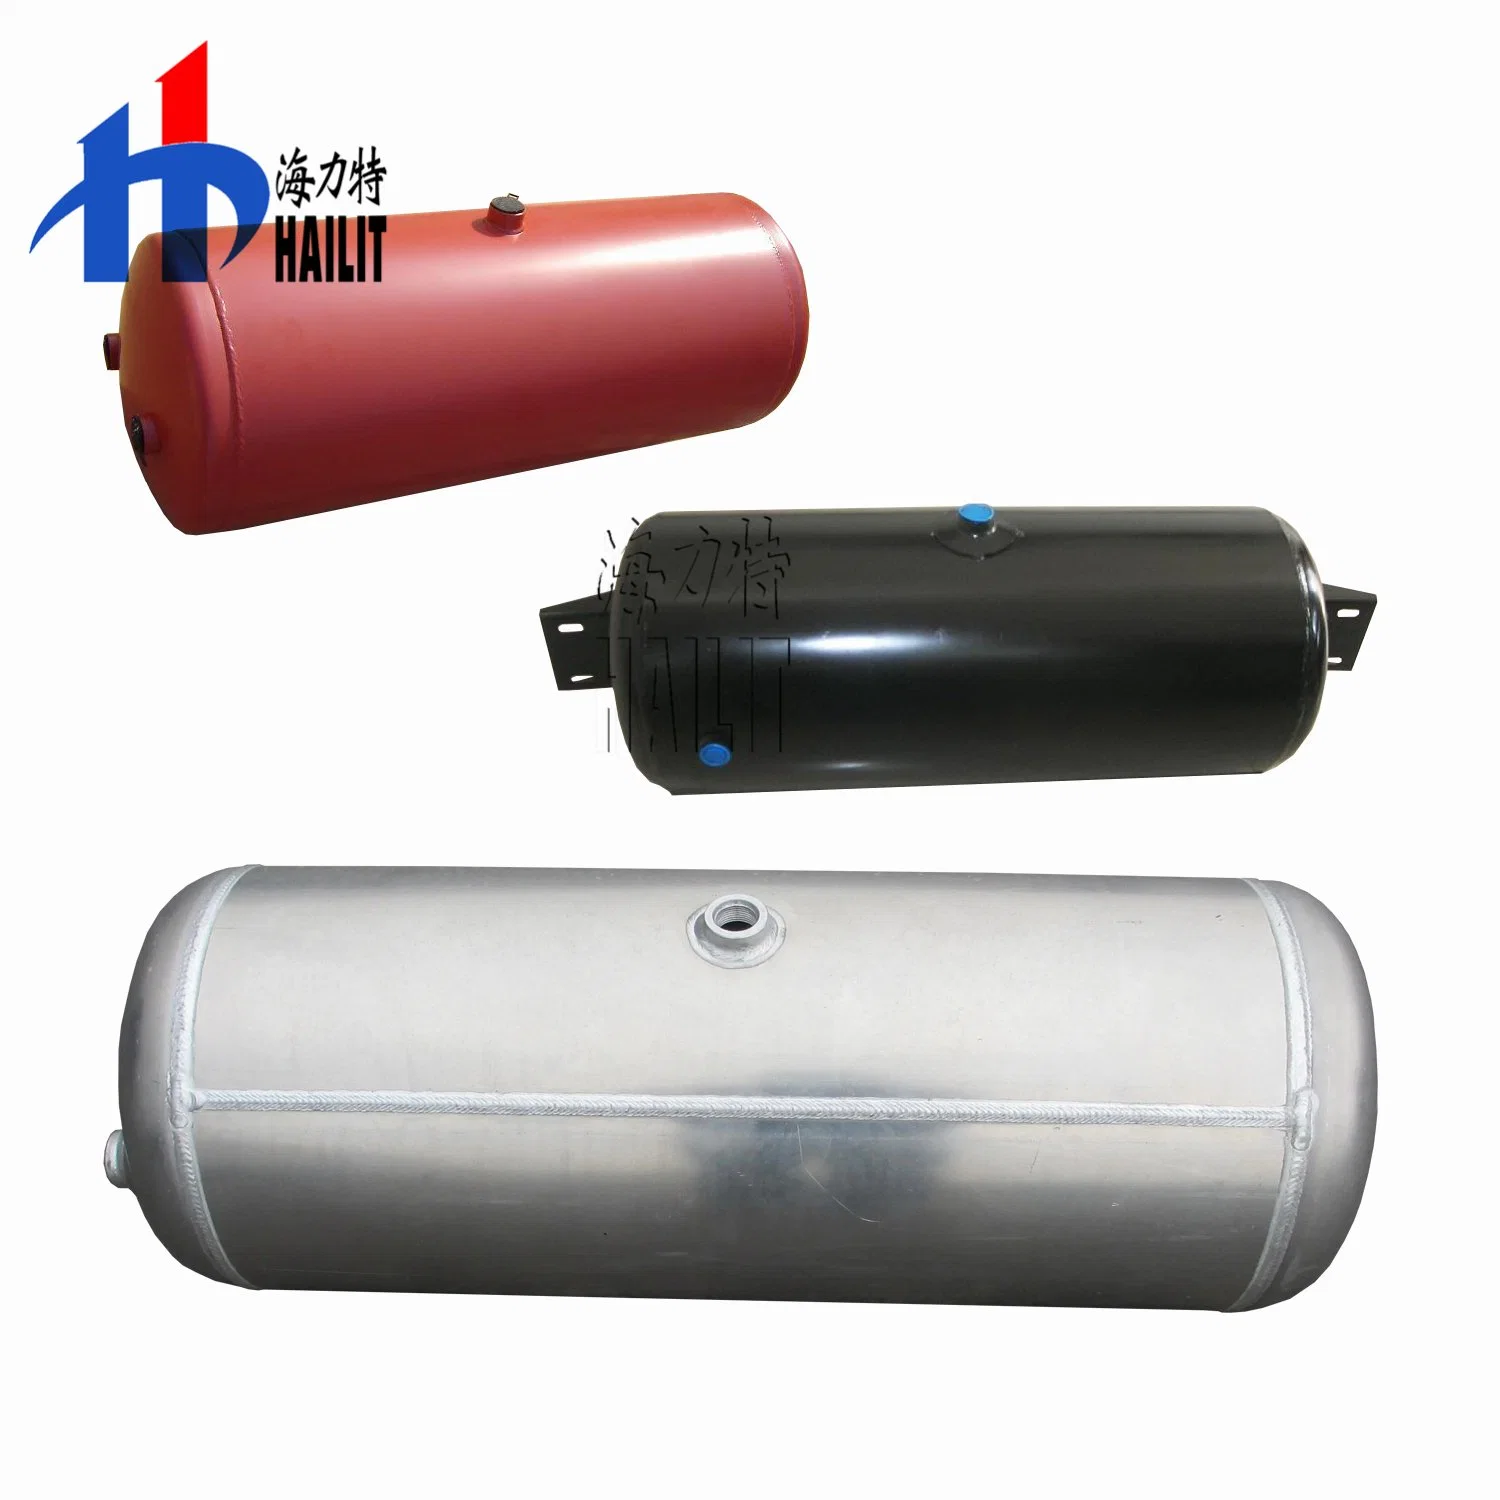 Trailer las piezas del sistema de frenos de aire del depósito de aire de acero para la venta (07)